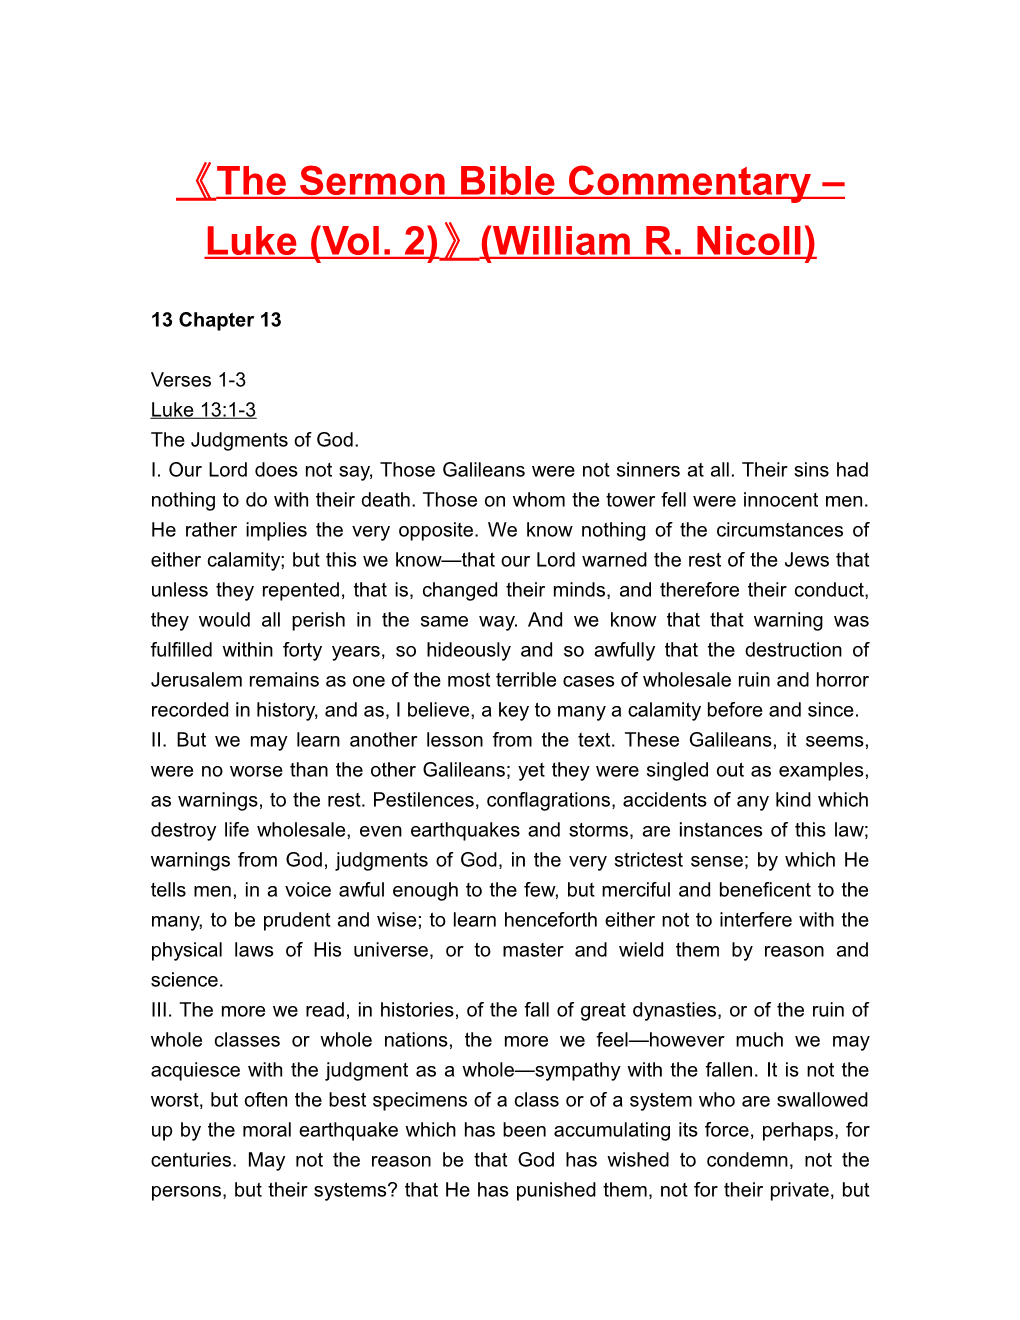 The Sermon Bible Commentary Luke (Vol. 2) (William R. Nicoll)